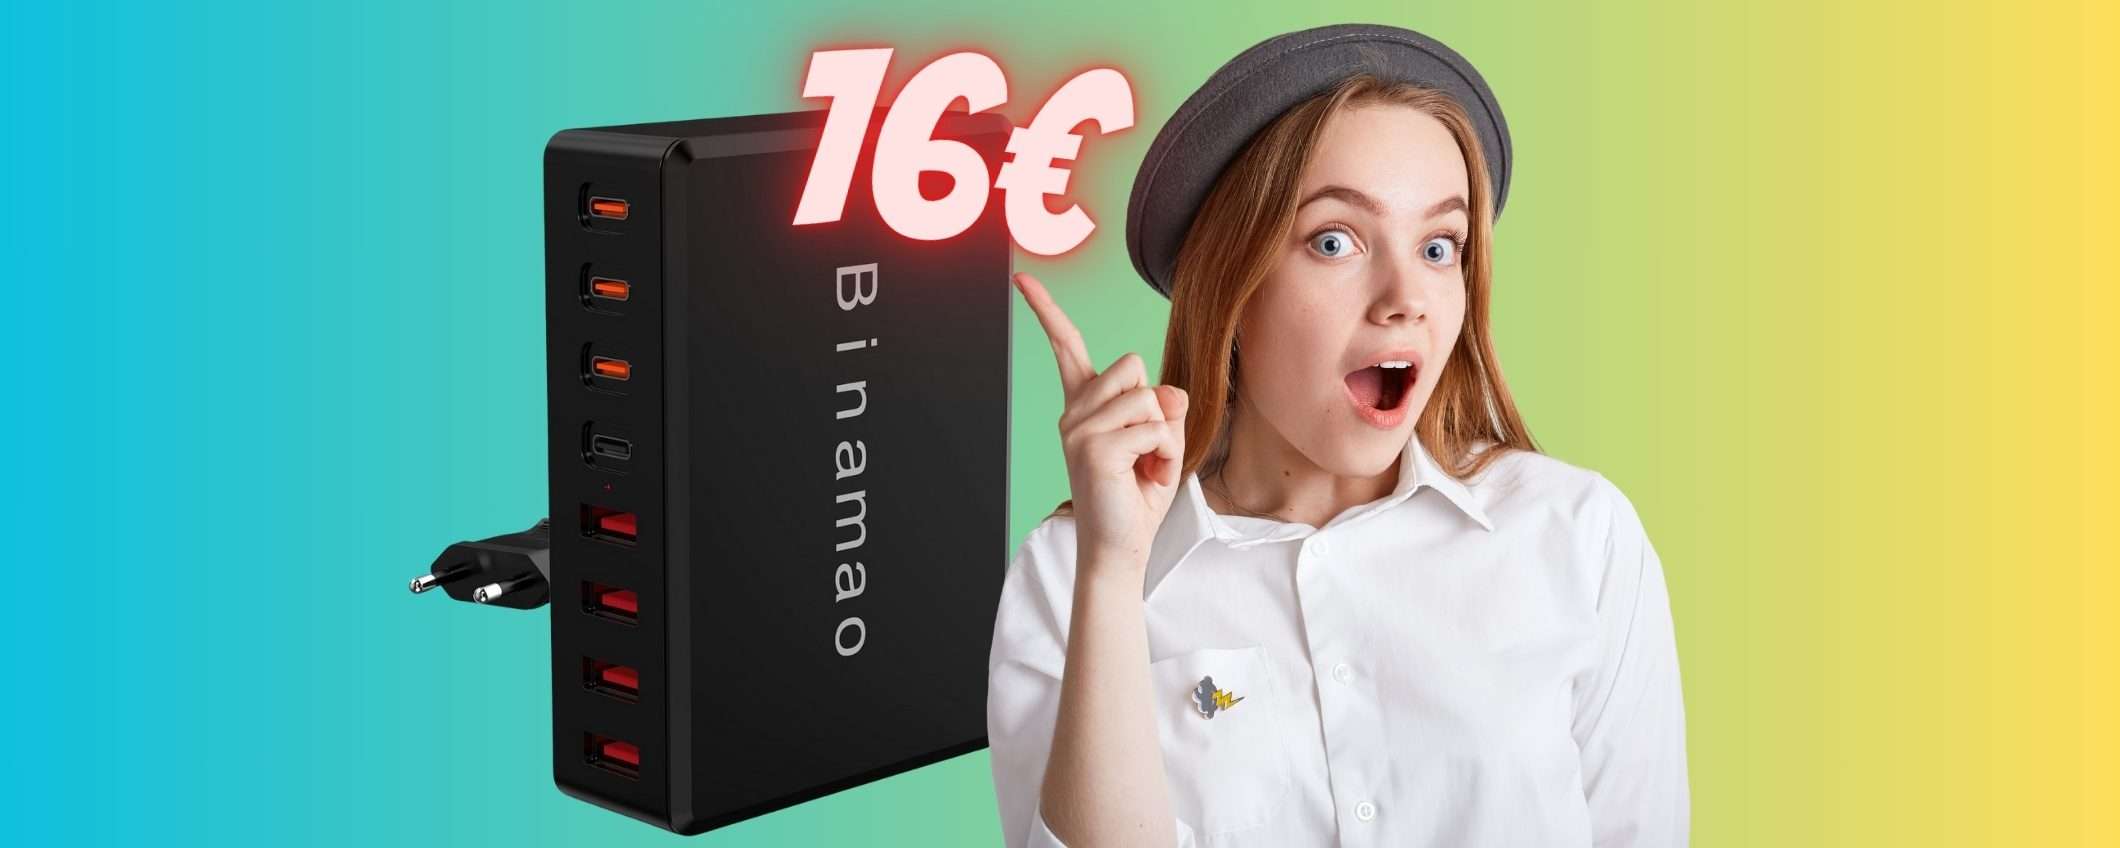 SOLO 16€ per questo caricatore USB con 8 porte: OFFERTA TOP